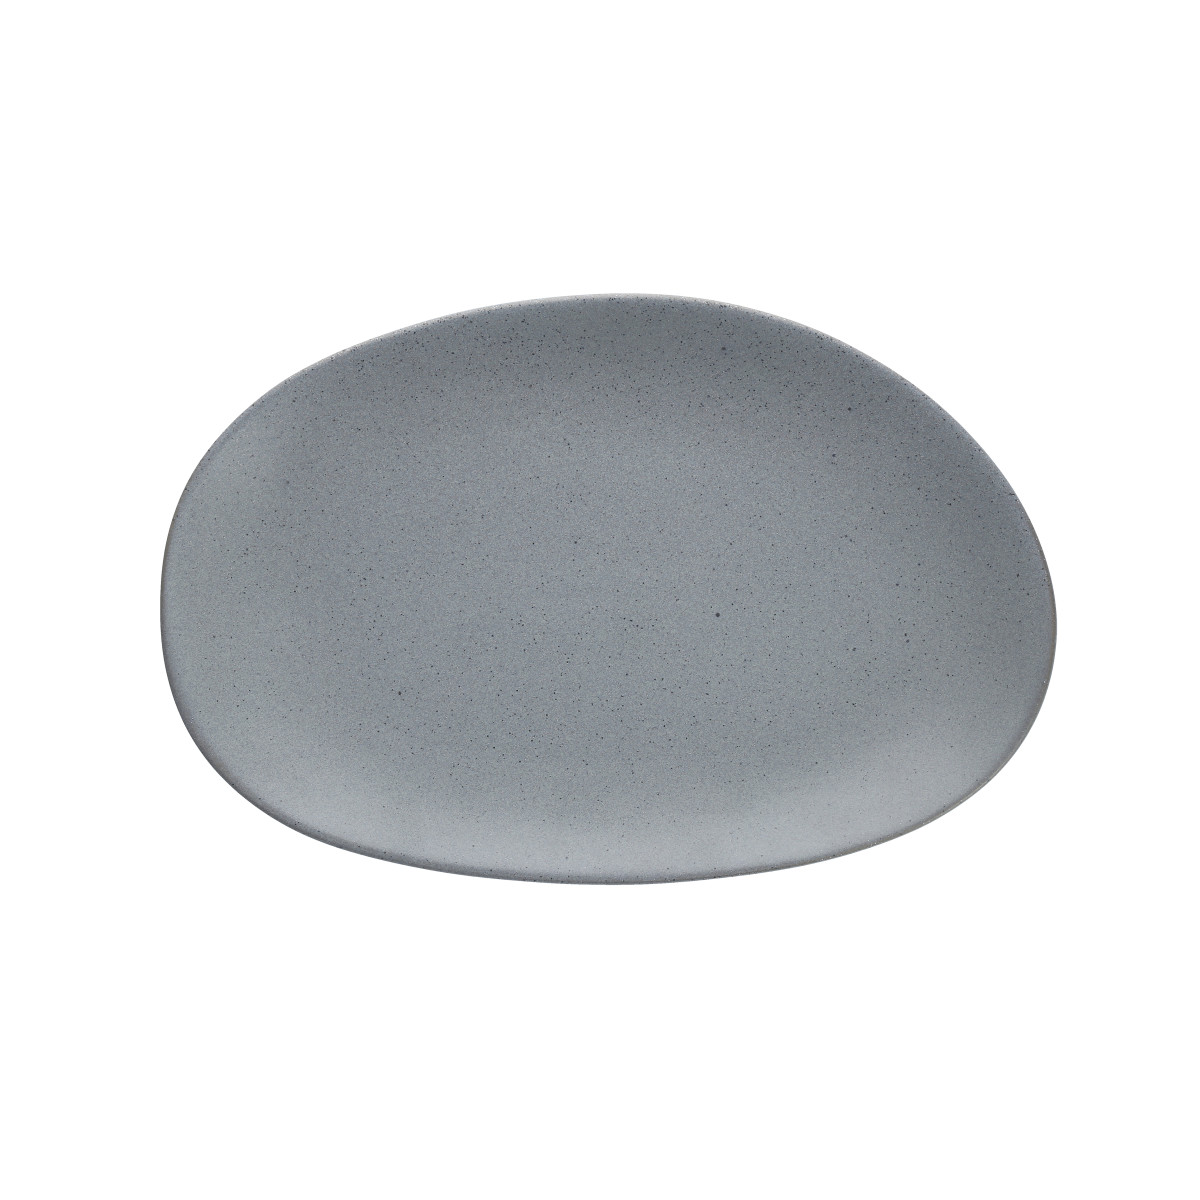 Cairn Oval Platter 14"